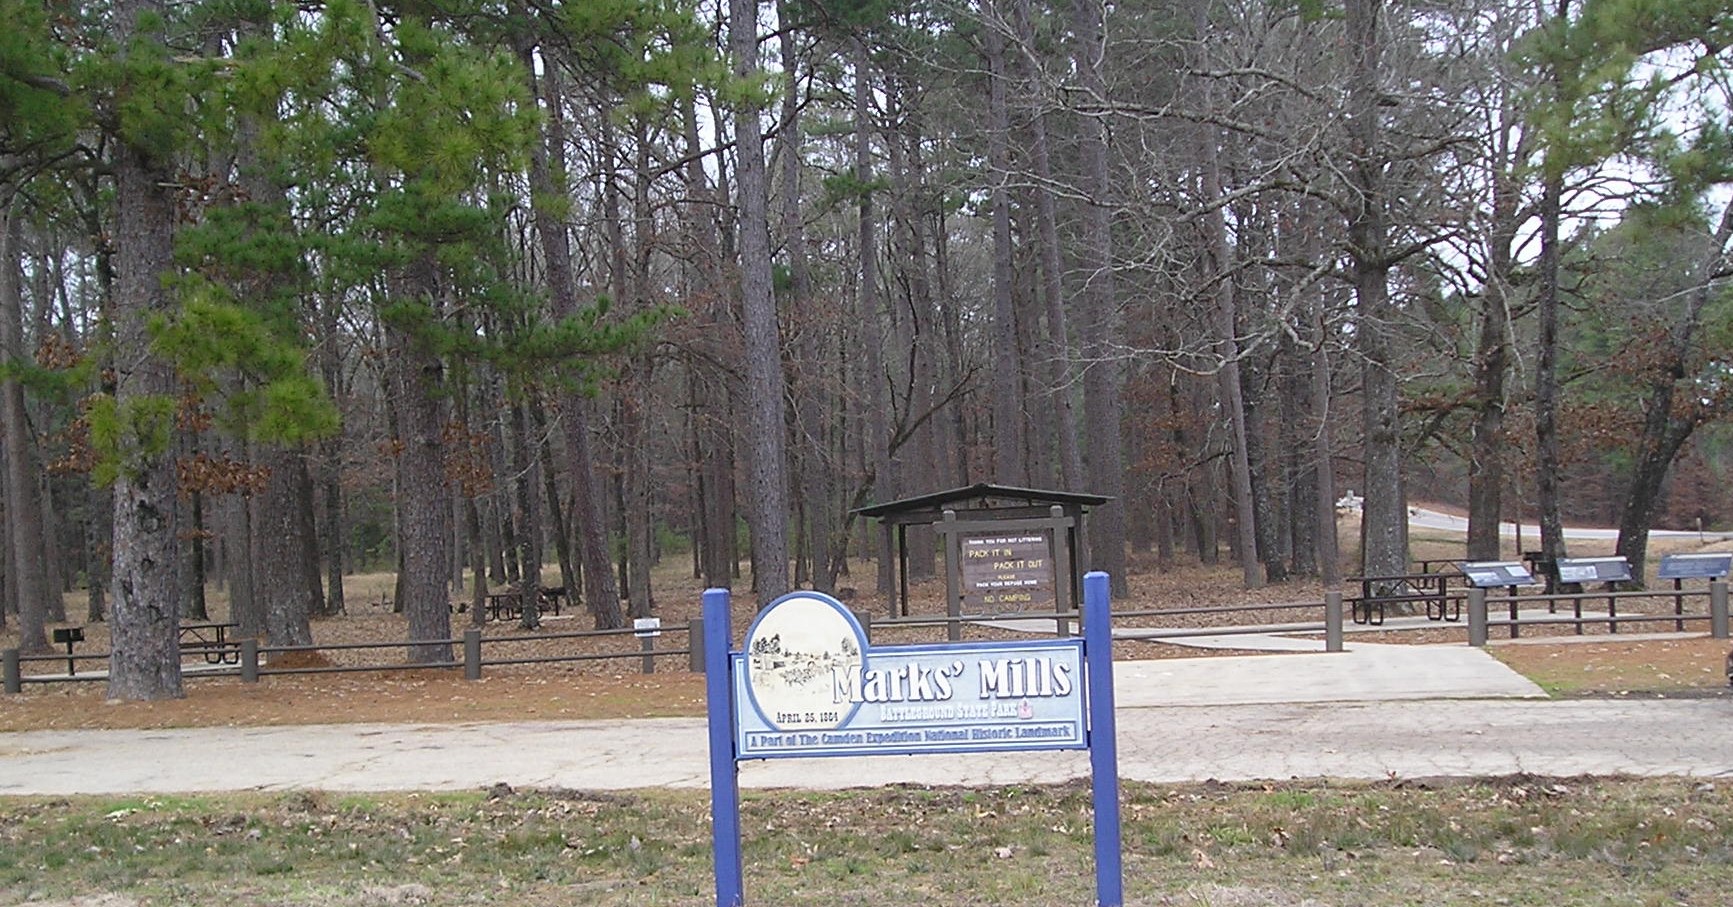 Marks' Mills Battleground State Park